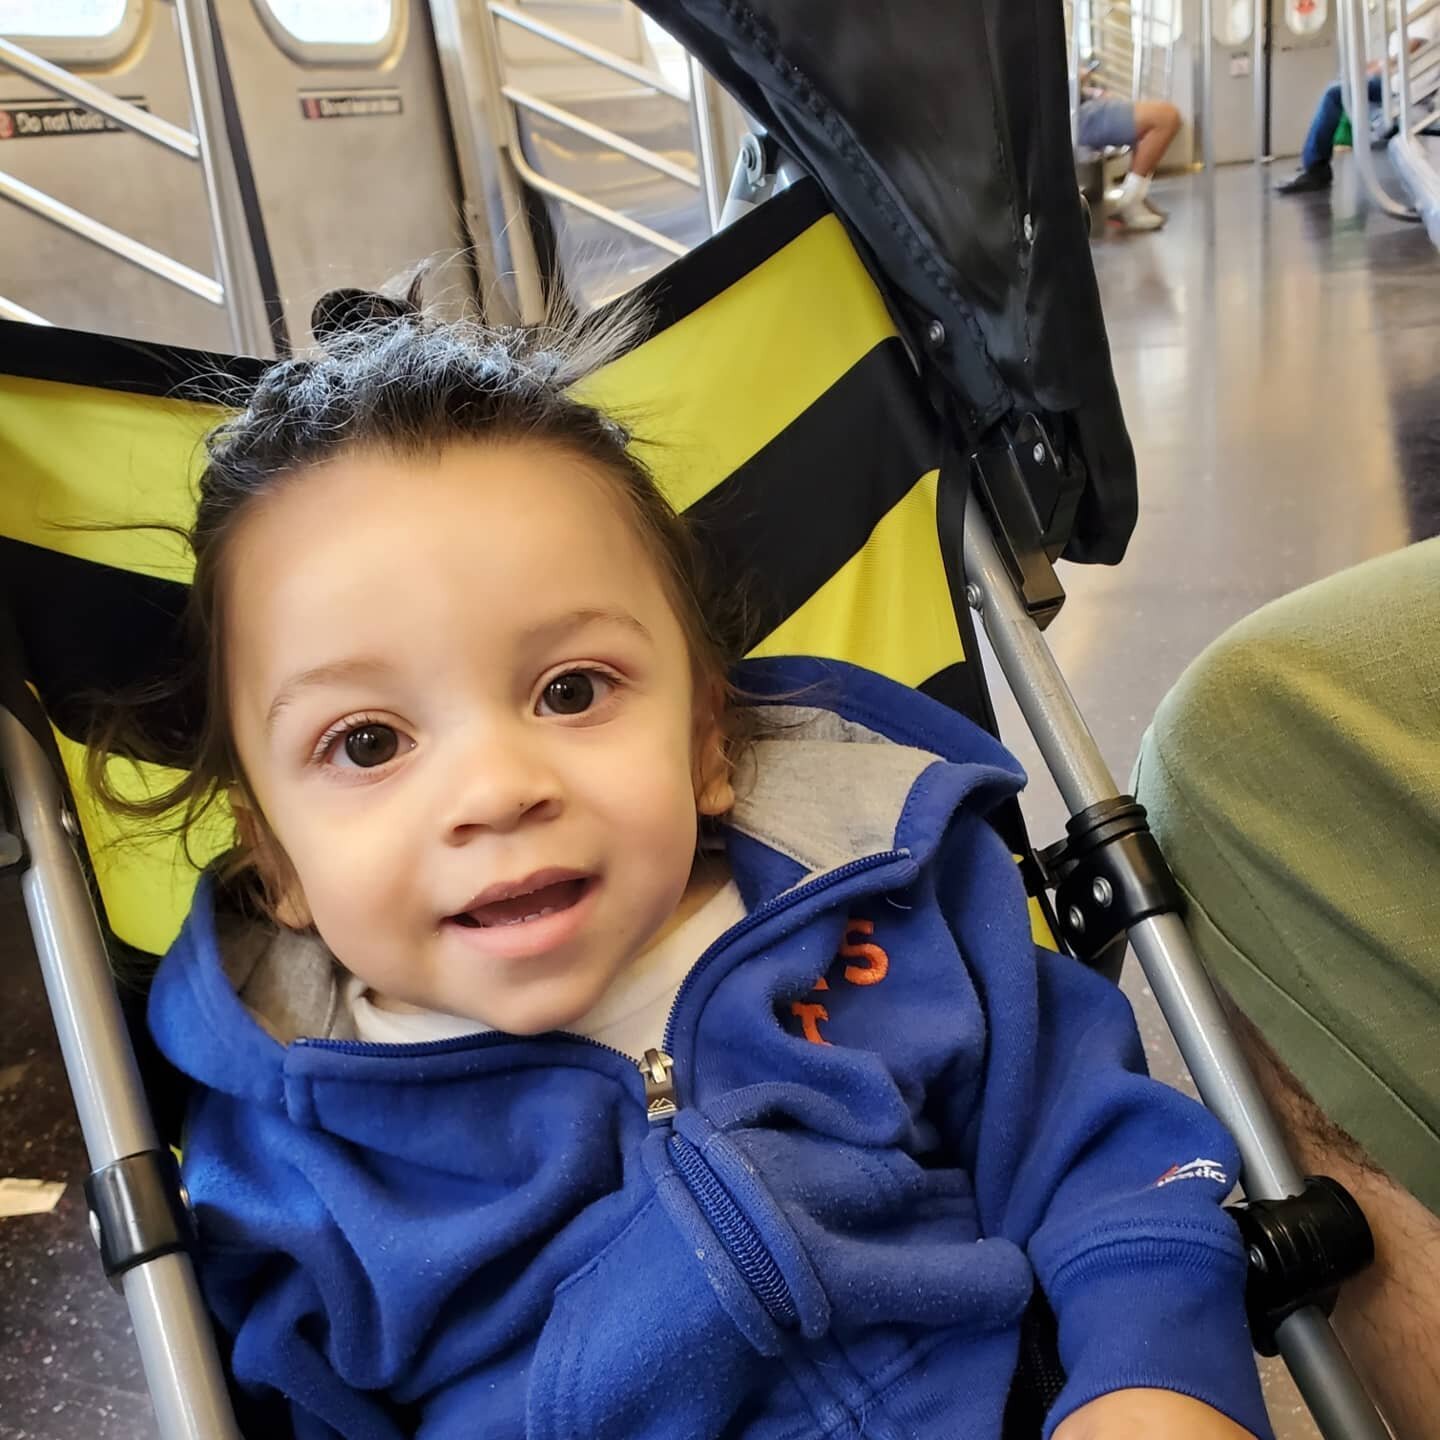 Baby bull's first train ride 🚇
#wywythecutiepie